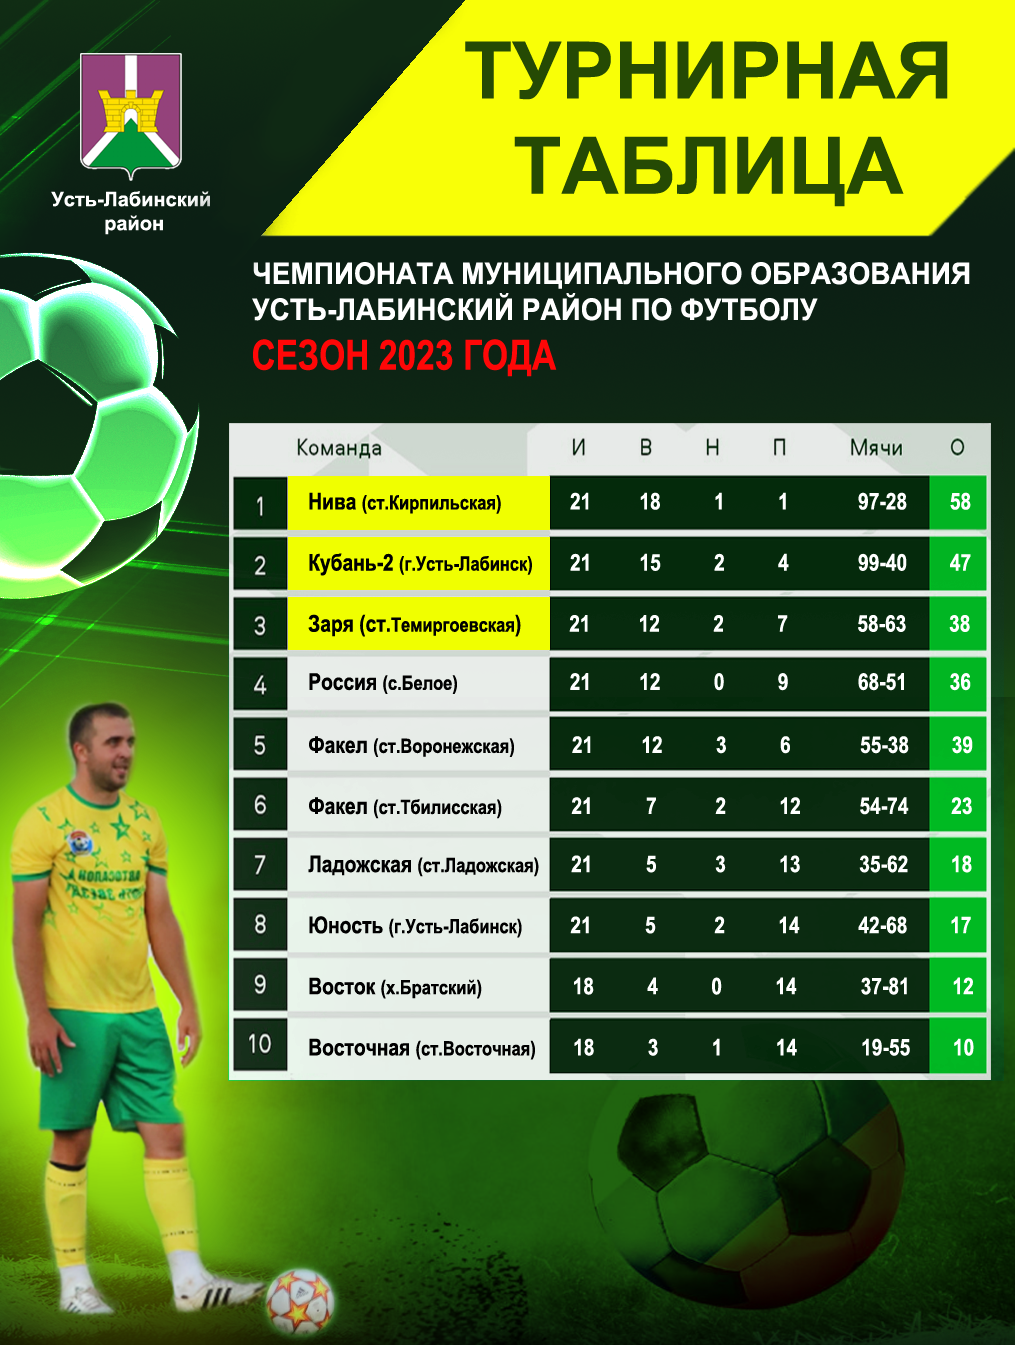 Итоги чемпионата Усть-Лабинского района по футболу в 2023 году